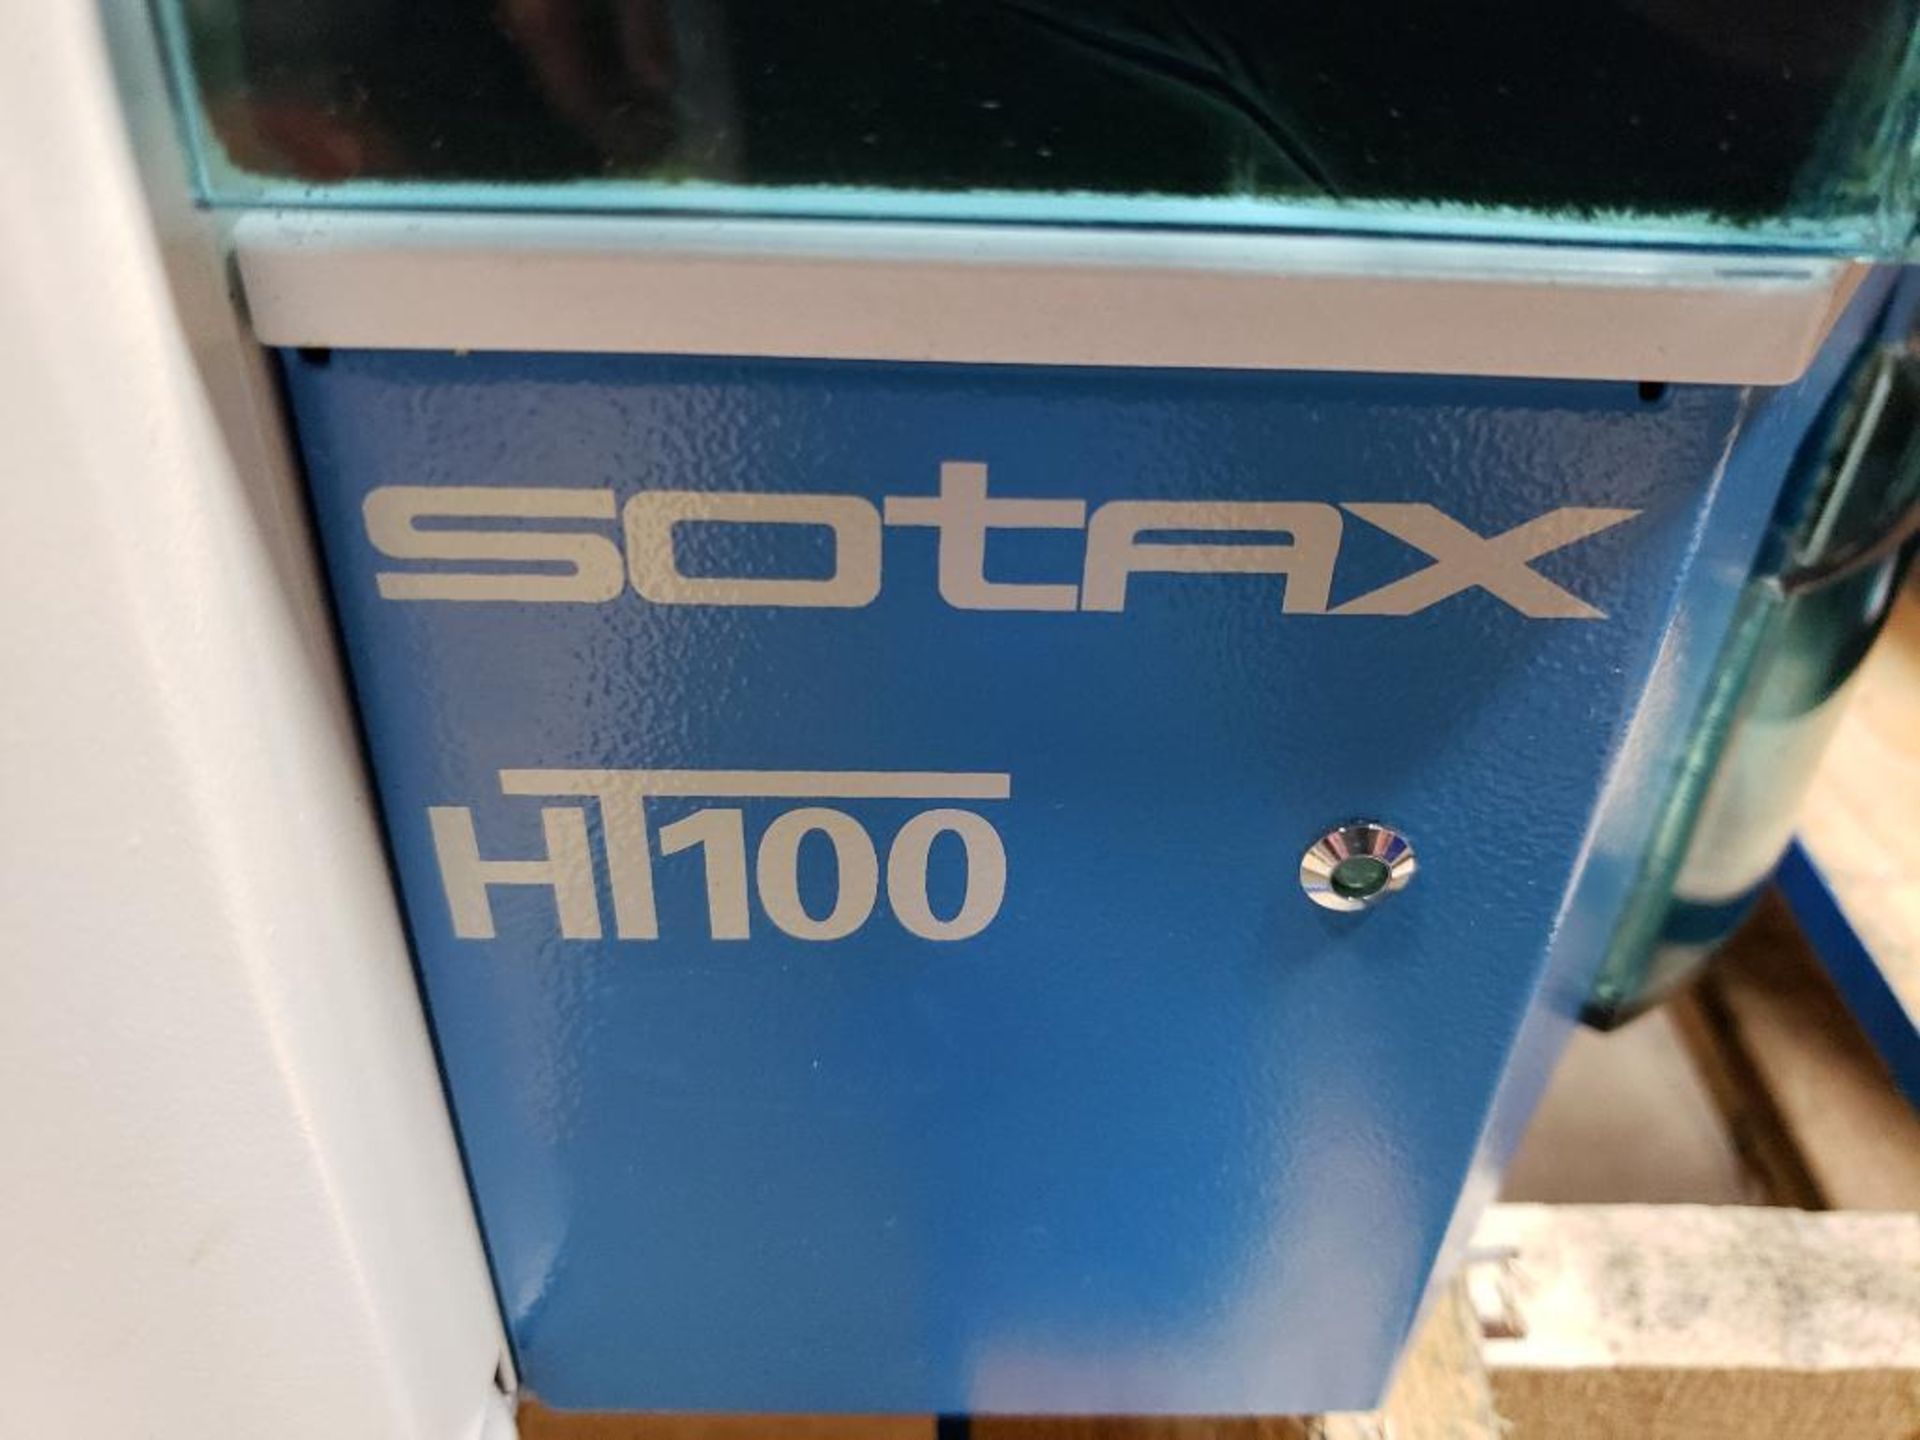 Sotax HT100 tablet testing system. 4022.003 Art.No. 8600. 115-230V. - Image 3 of 15